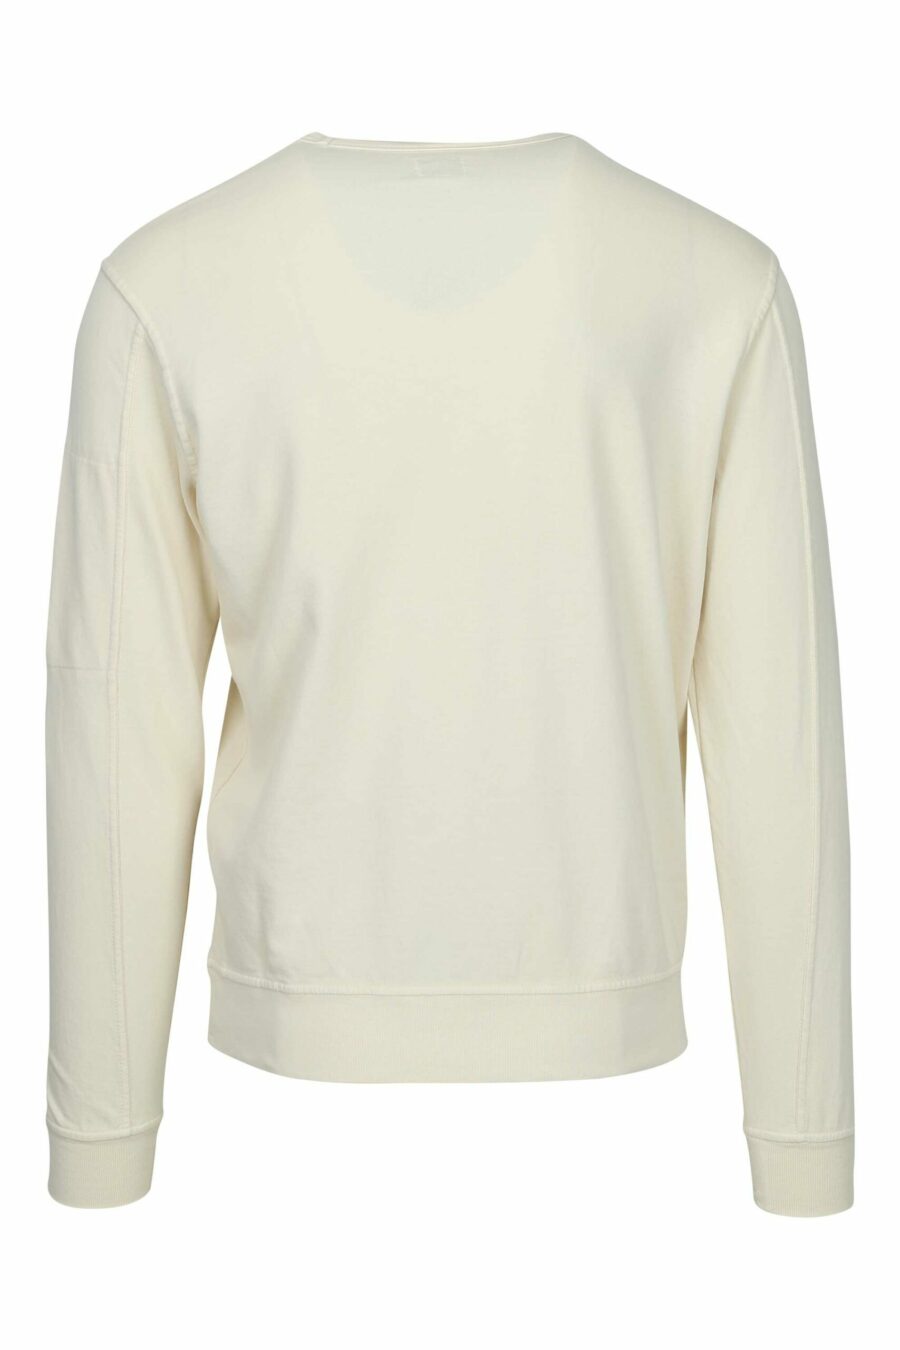 Beigefarbenes Sweatshirt mit Tasche und Mini-Logo-Linse - 7620943680911 2 skaliert